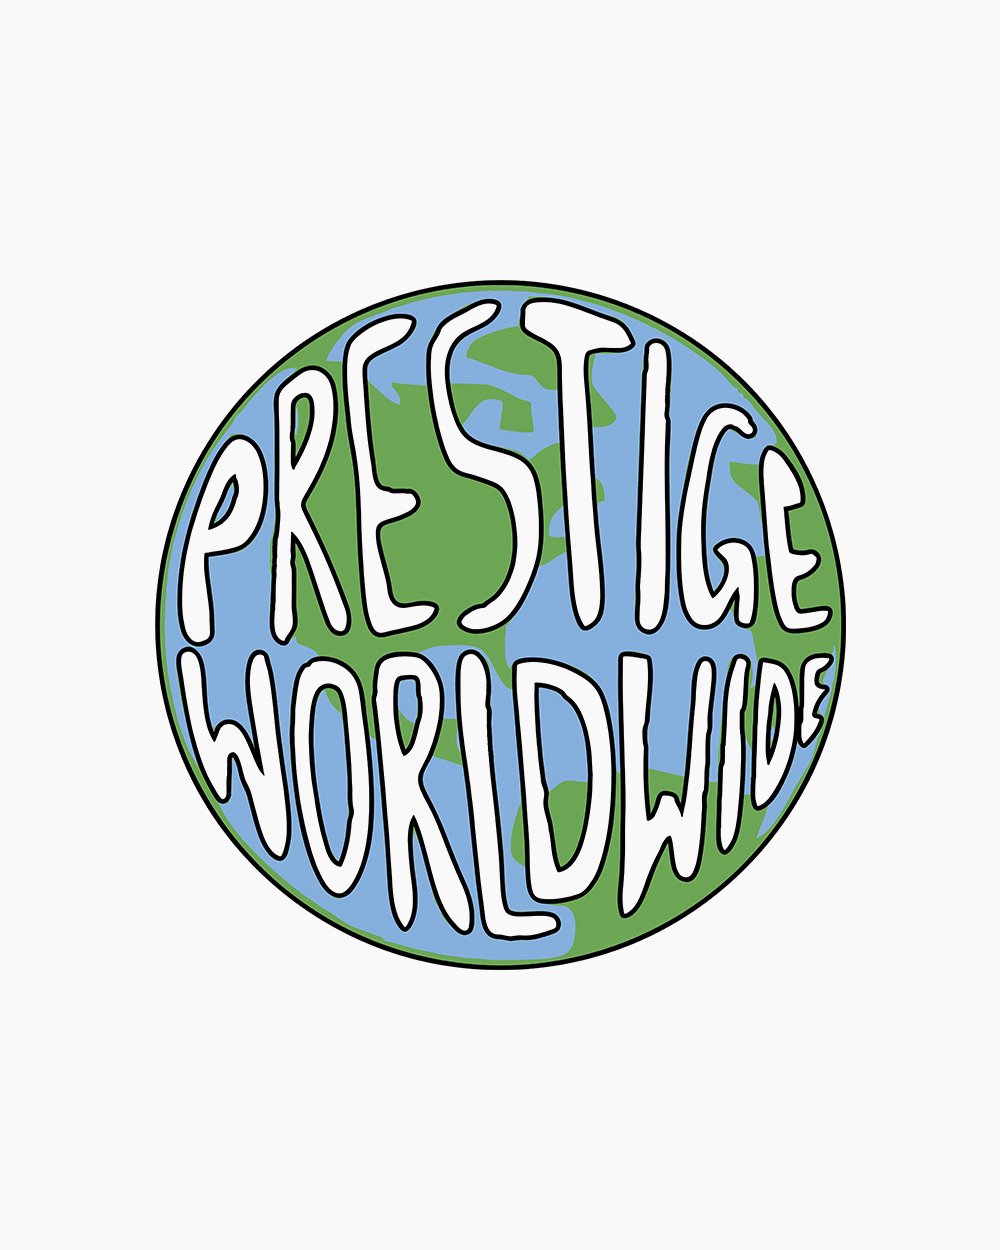 Prestige Worldwide T-Shirt Australia Online #colour_white